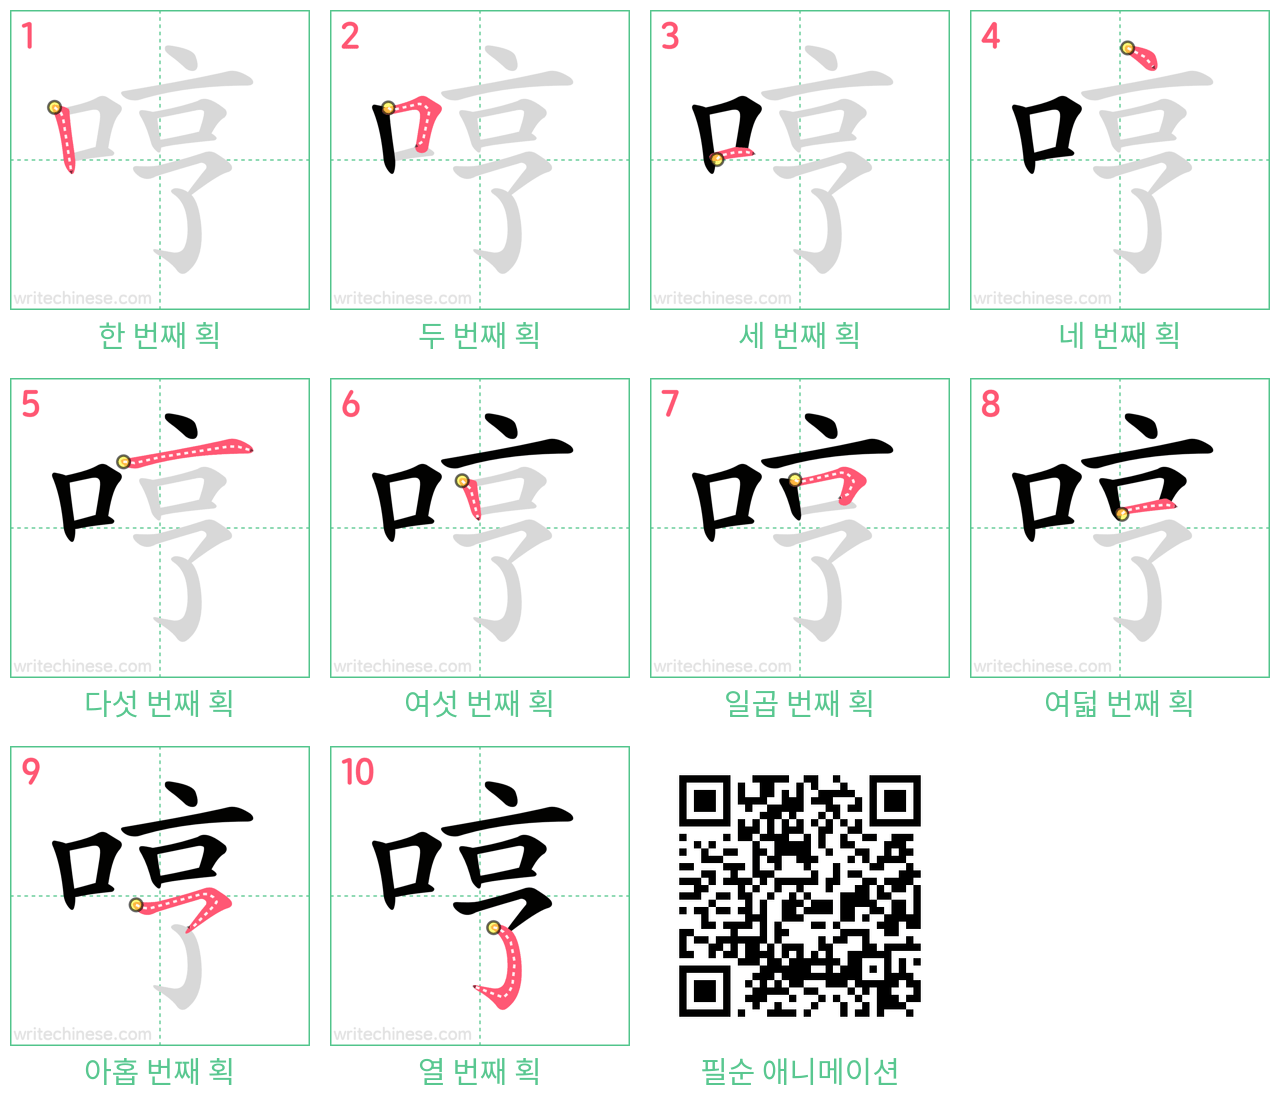 哼 step-by-step stroke order diagrams